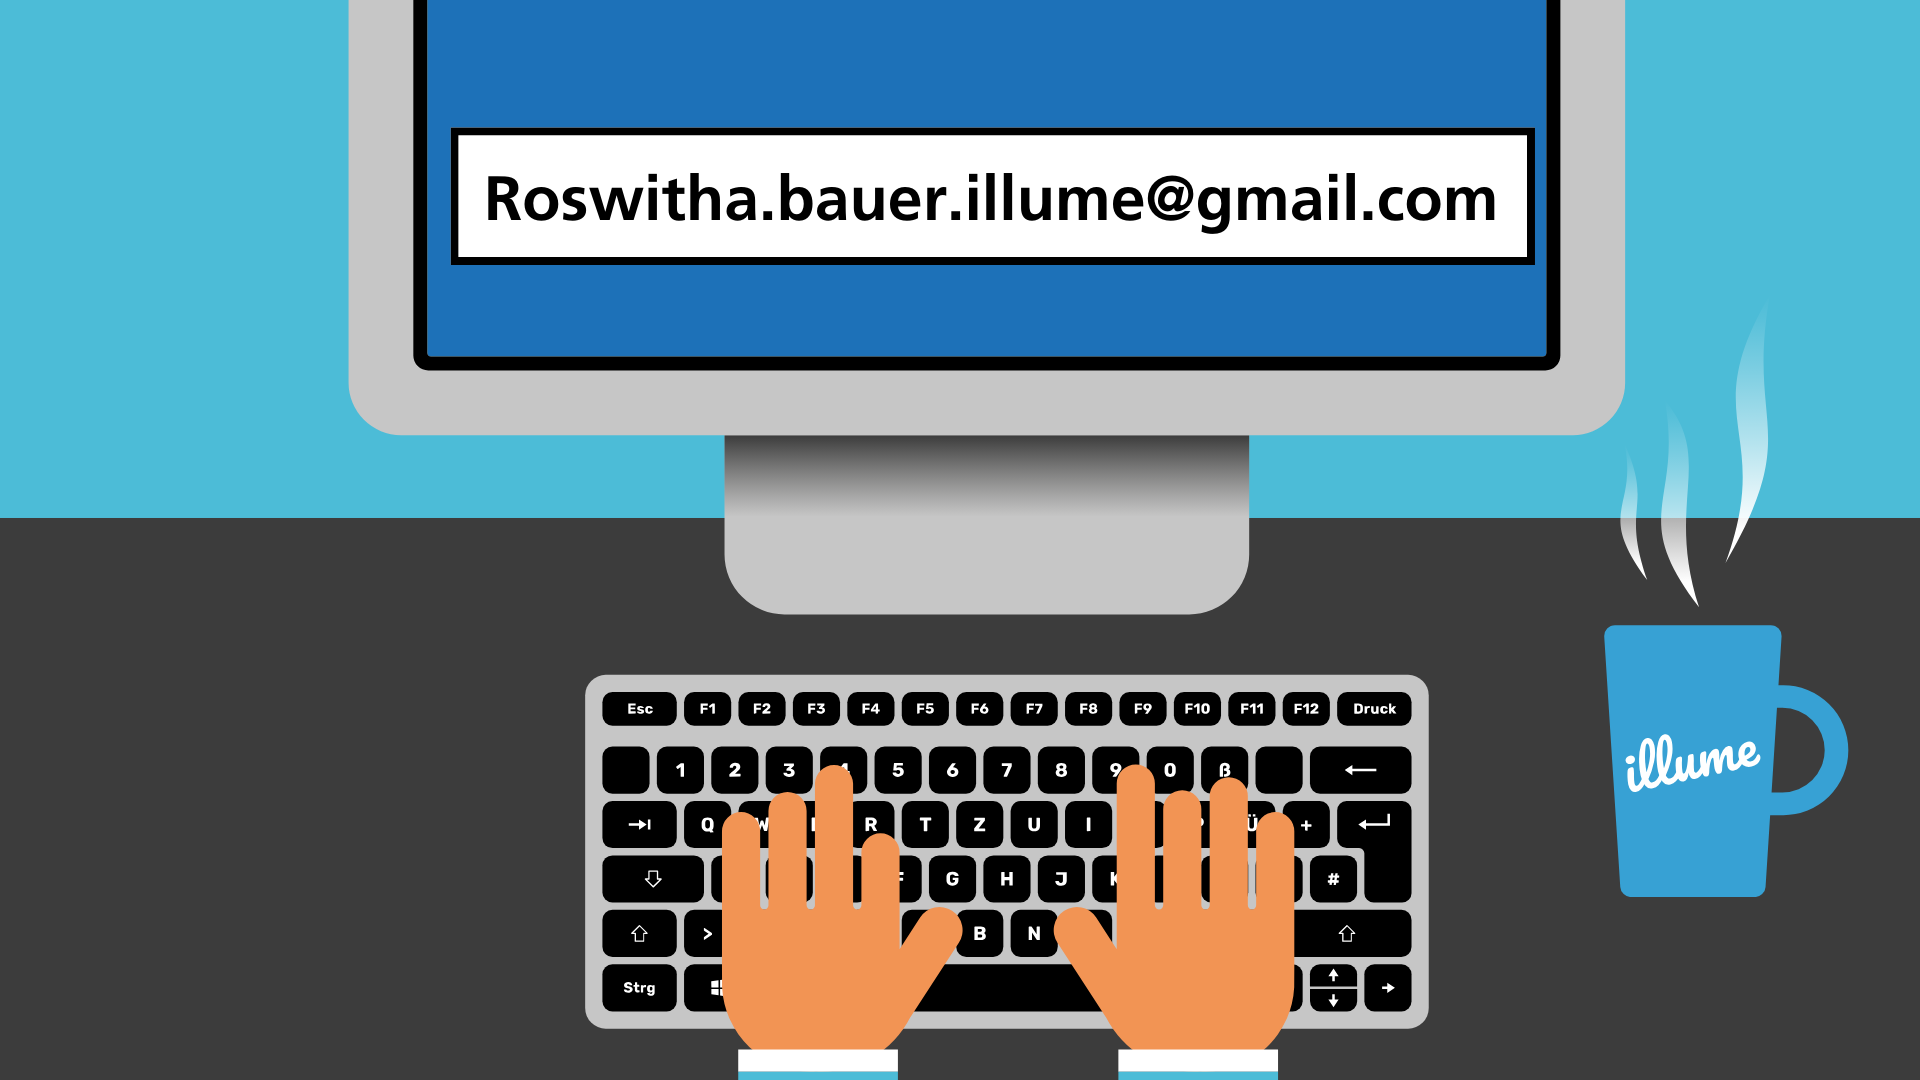 Ein Bildschirm mit der Adresse Roswitha.Bauer.illume@gmail.com. Darunter tippen zwei Hände auf einer Tastatur. Daneben eine dampfende Tasse mit illume Logo.